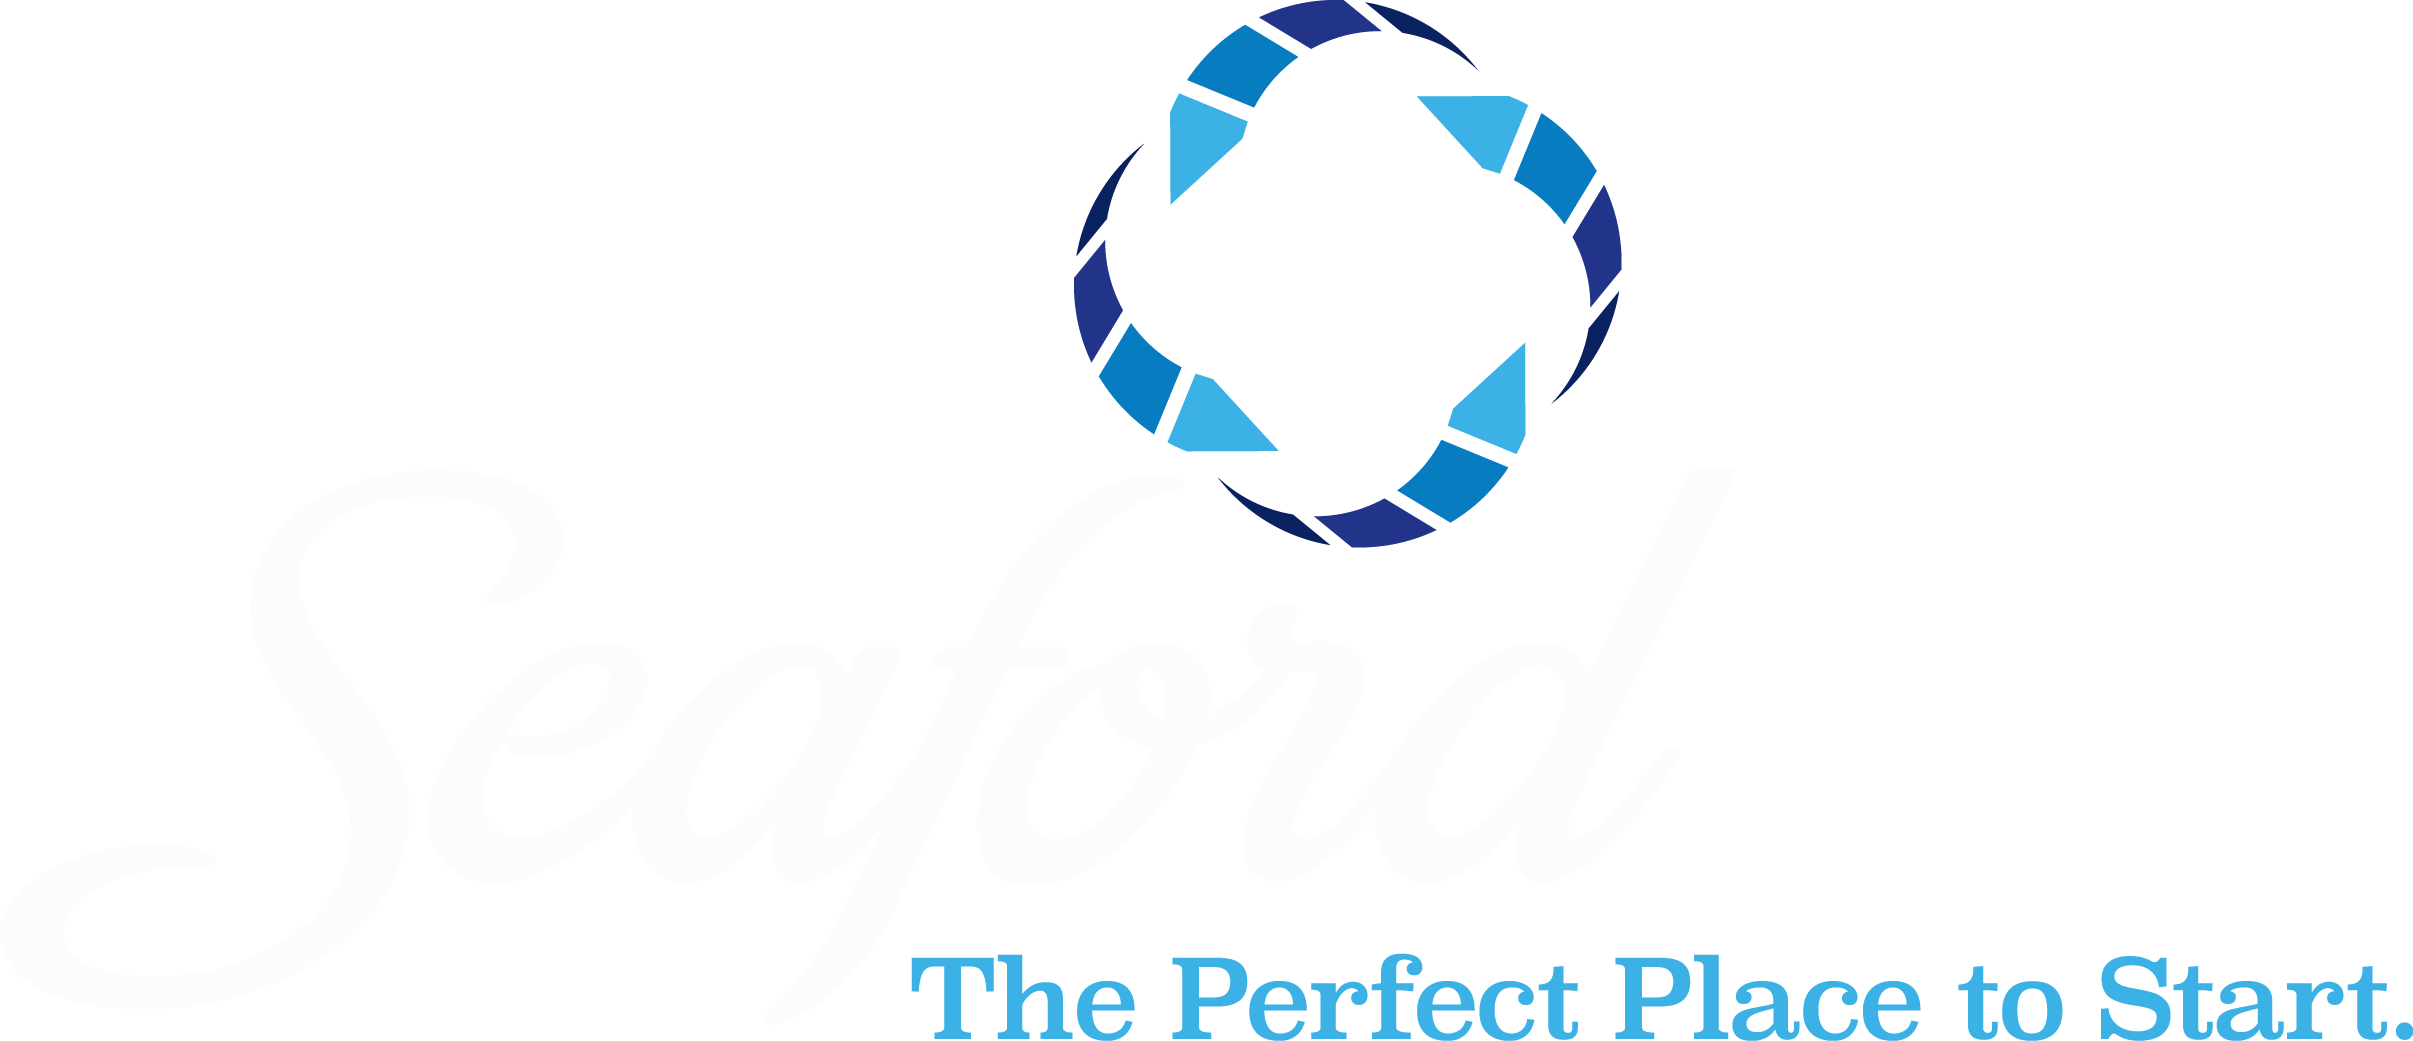 City of Seaford, DE's logo'